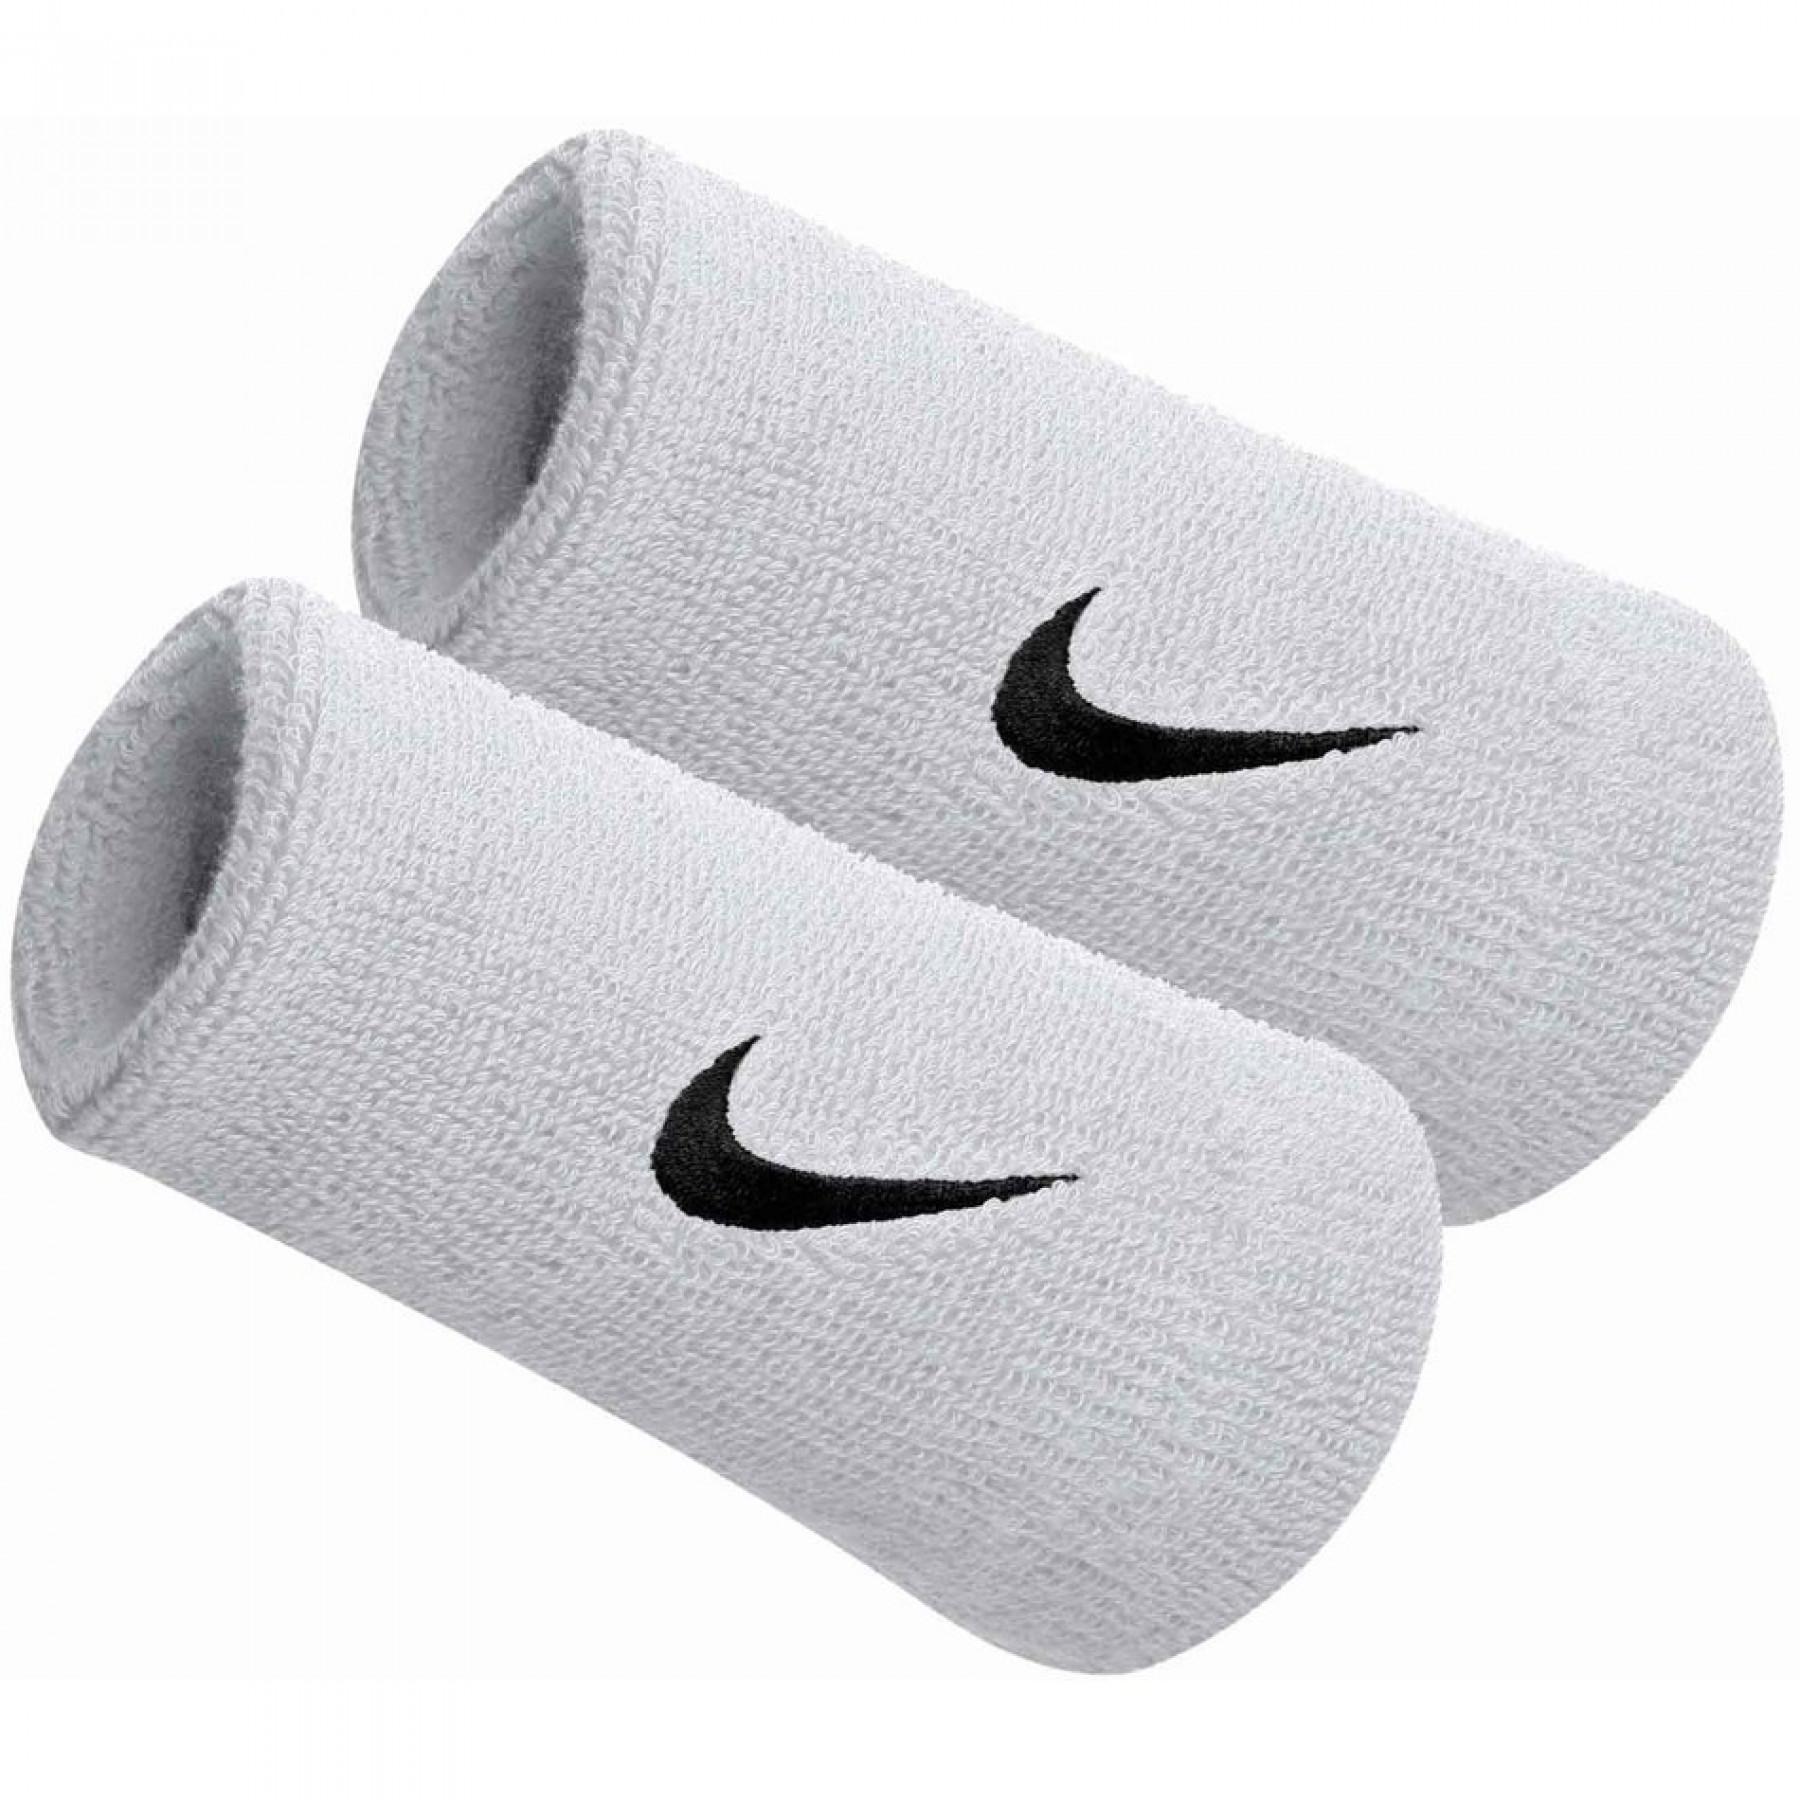 Sponge cuffs Nike swoosh doublewide